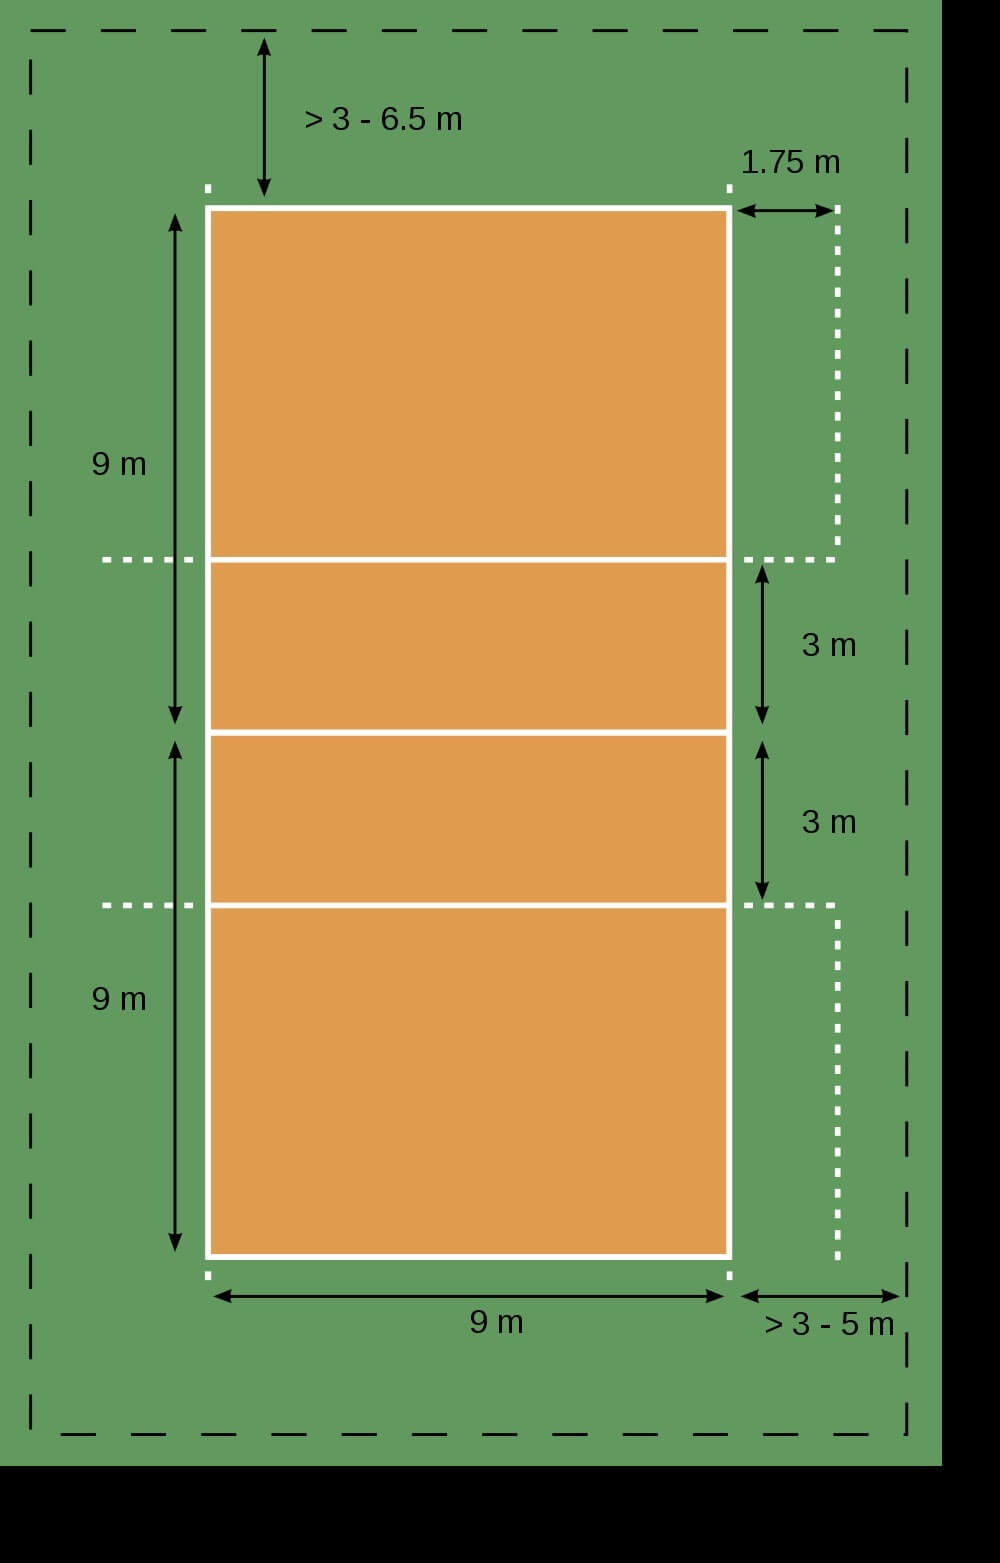 Điều kiện tiêu chuẩn về chiều cao và diện tích sân bóng chuyền là gì?
